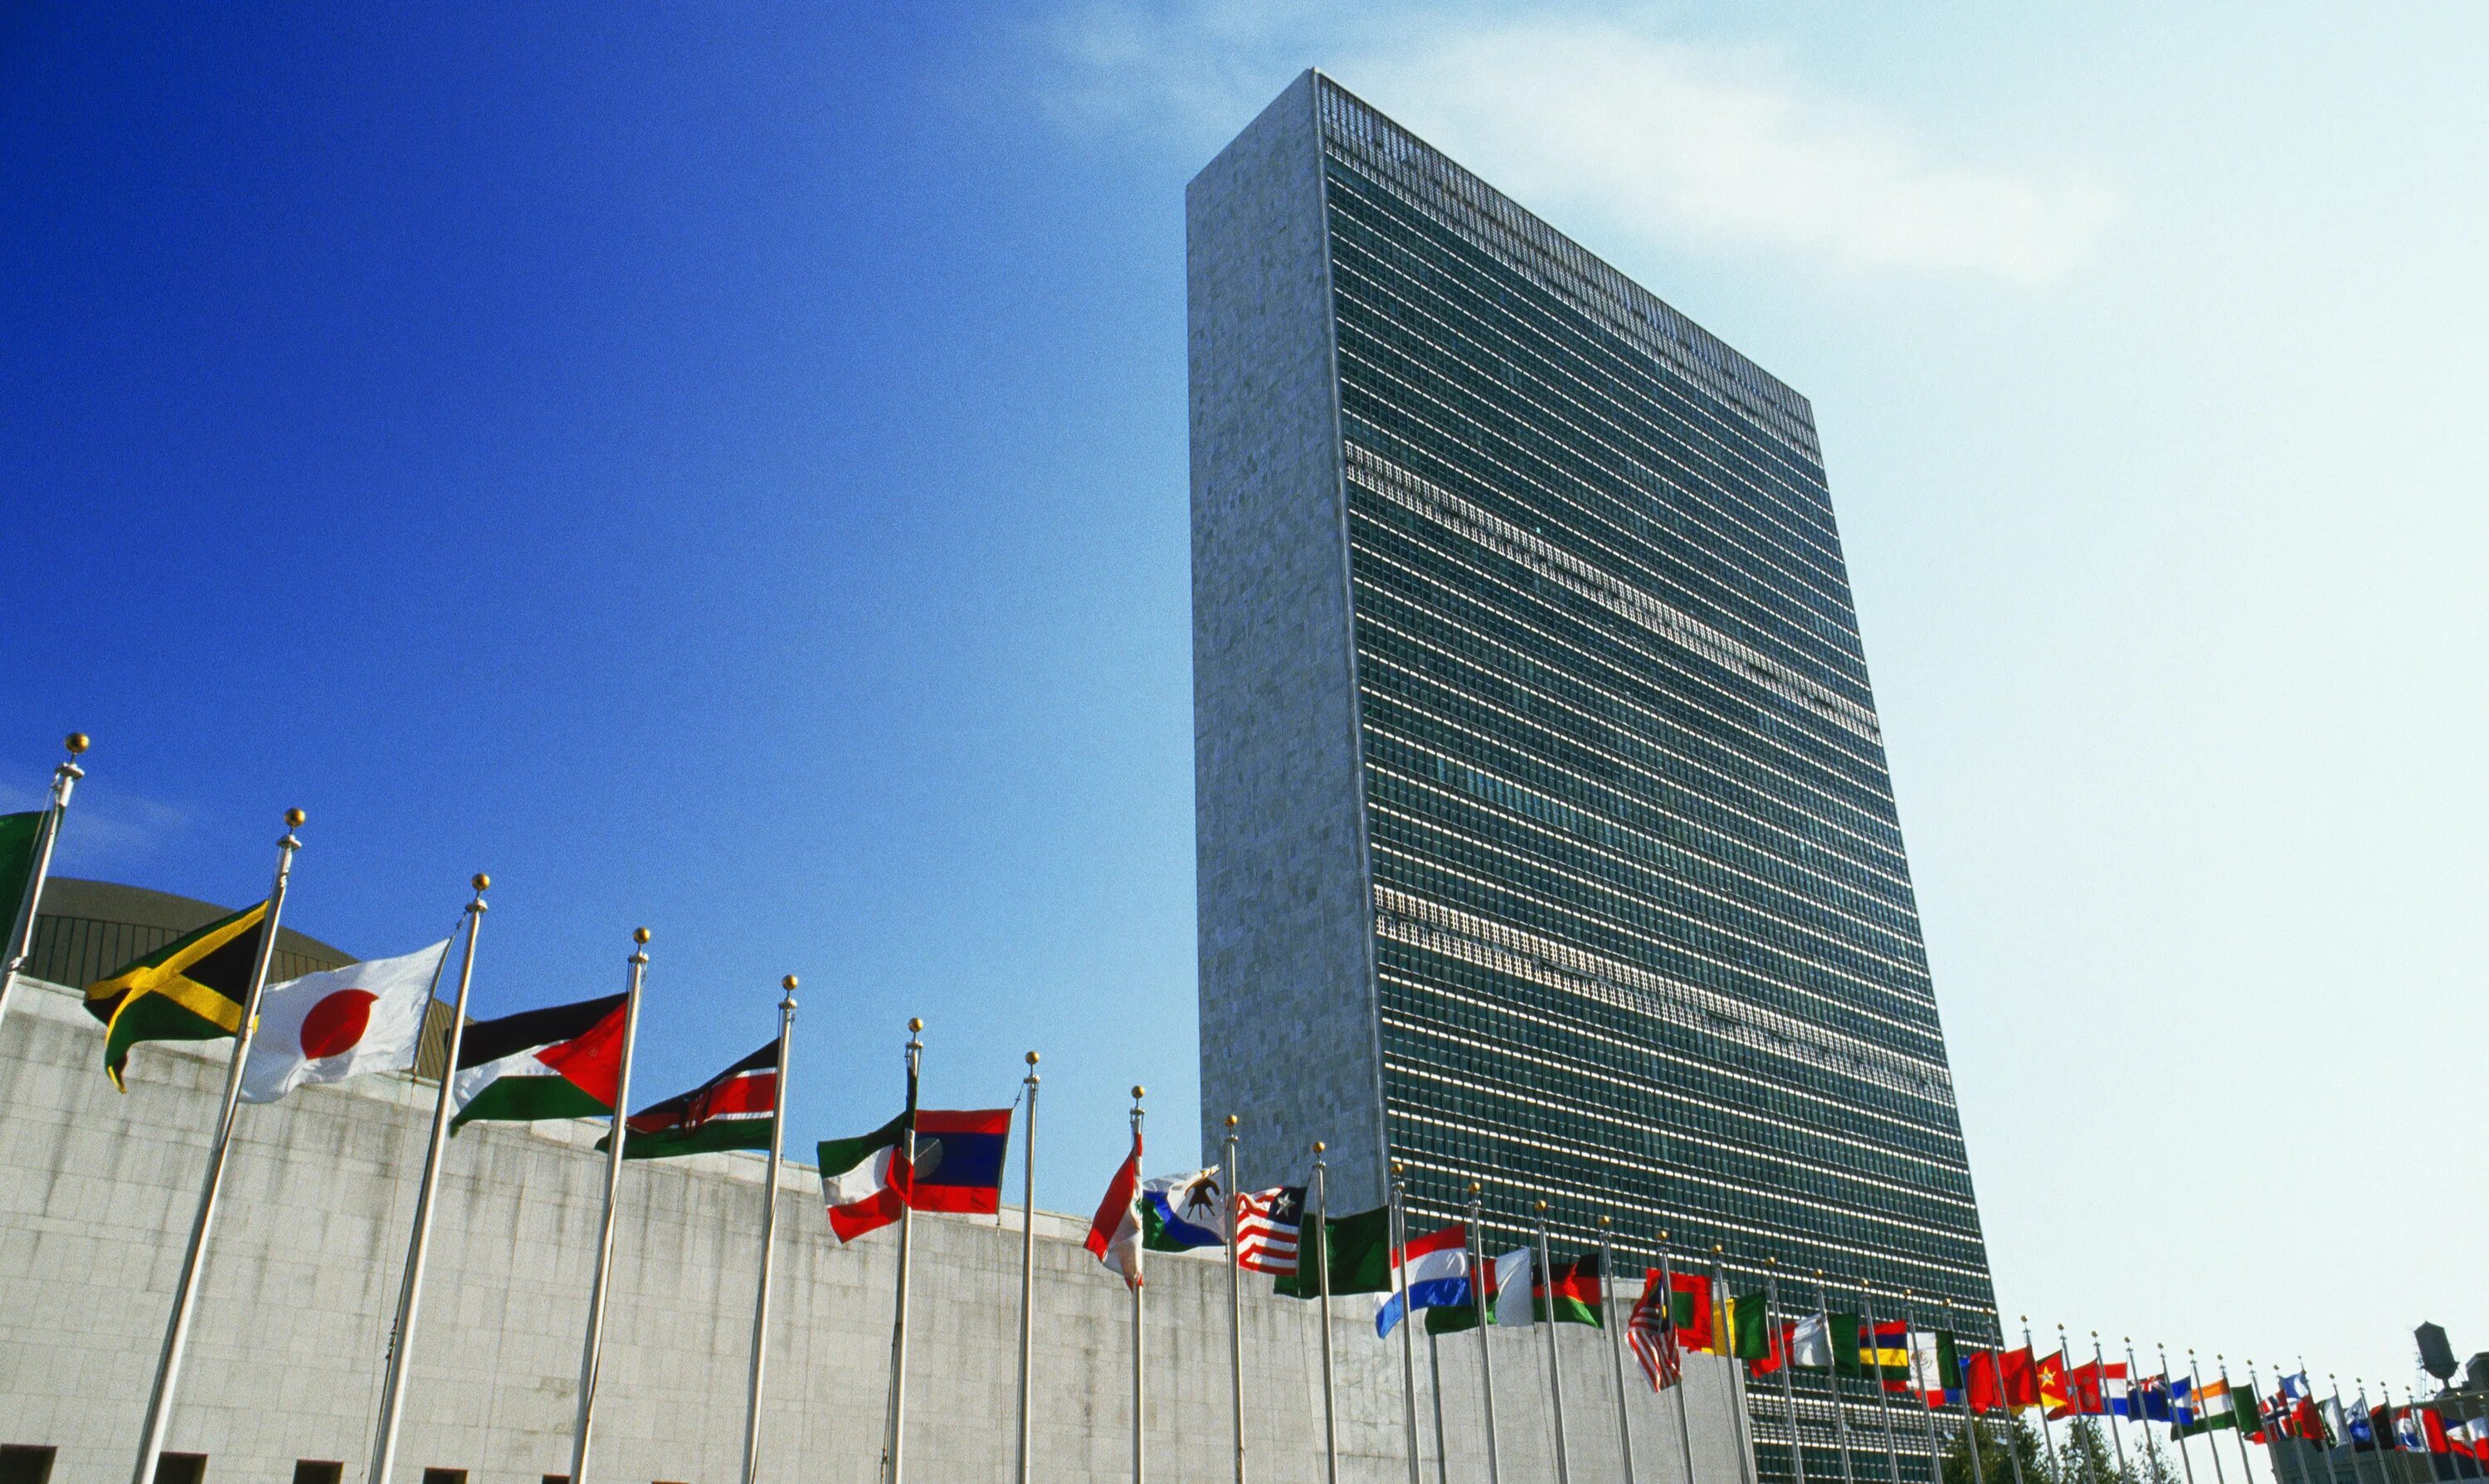 Дом оон. Штаб-квартира ООН В Нью-Йорке. Здание ООН В Нью-Йорке. Здание Генеральной Ассамблеи ООН В Нью-Йорке. Штаб-квартиры организации Объединённых наций в Нью-Йорке..